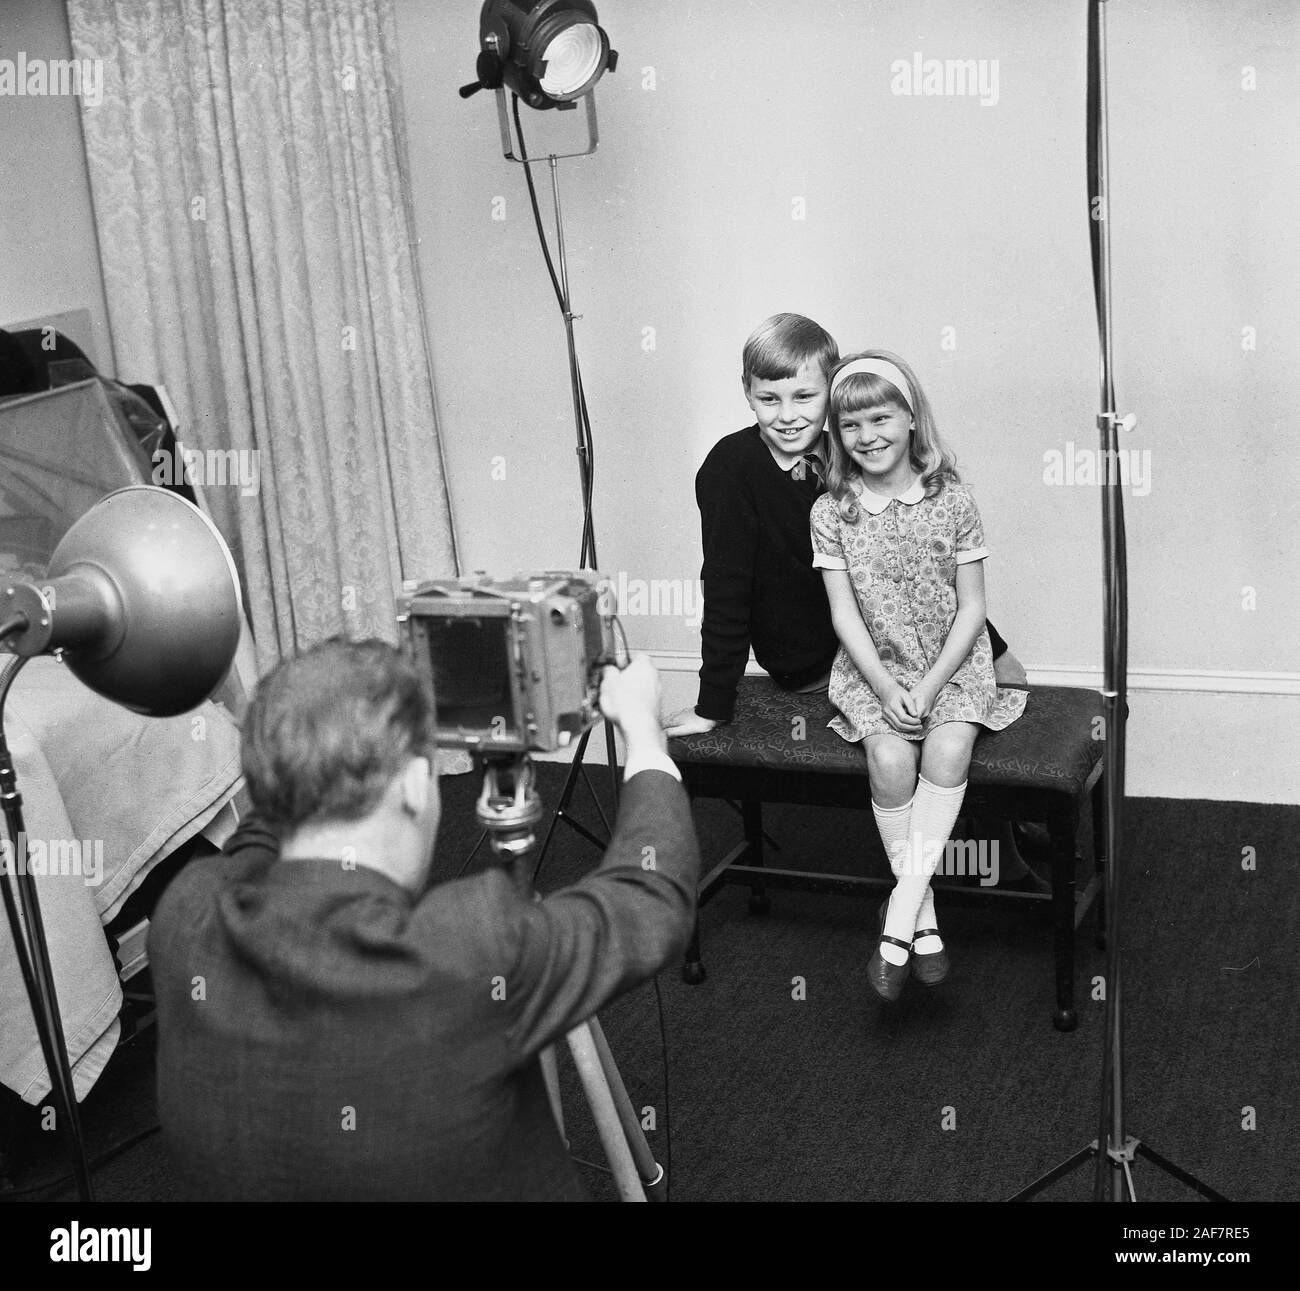 Années 1960, historique, assis à l'intérieur d'un studio photographique, deux enfants, un frère et une sœur, se faisant prendre en photo par un photographe professionnel à l'aide d'un appareil photo sur un trépied, Angleterre, Royaume-Uni. Banque D'Images